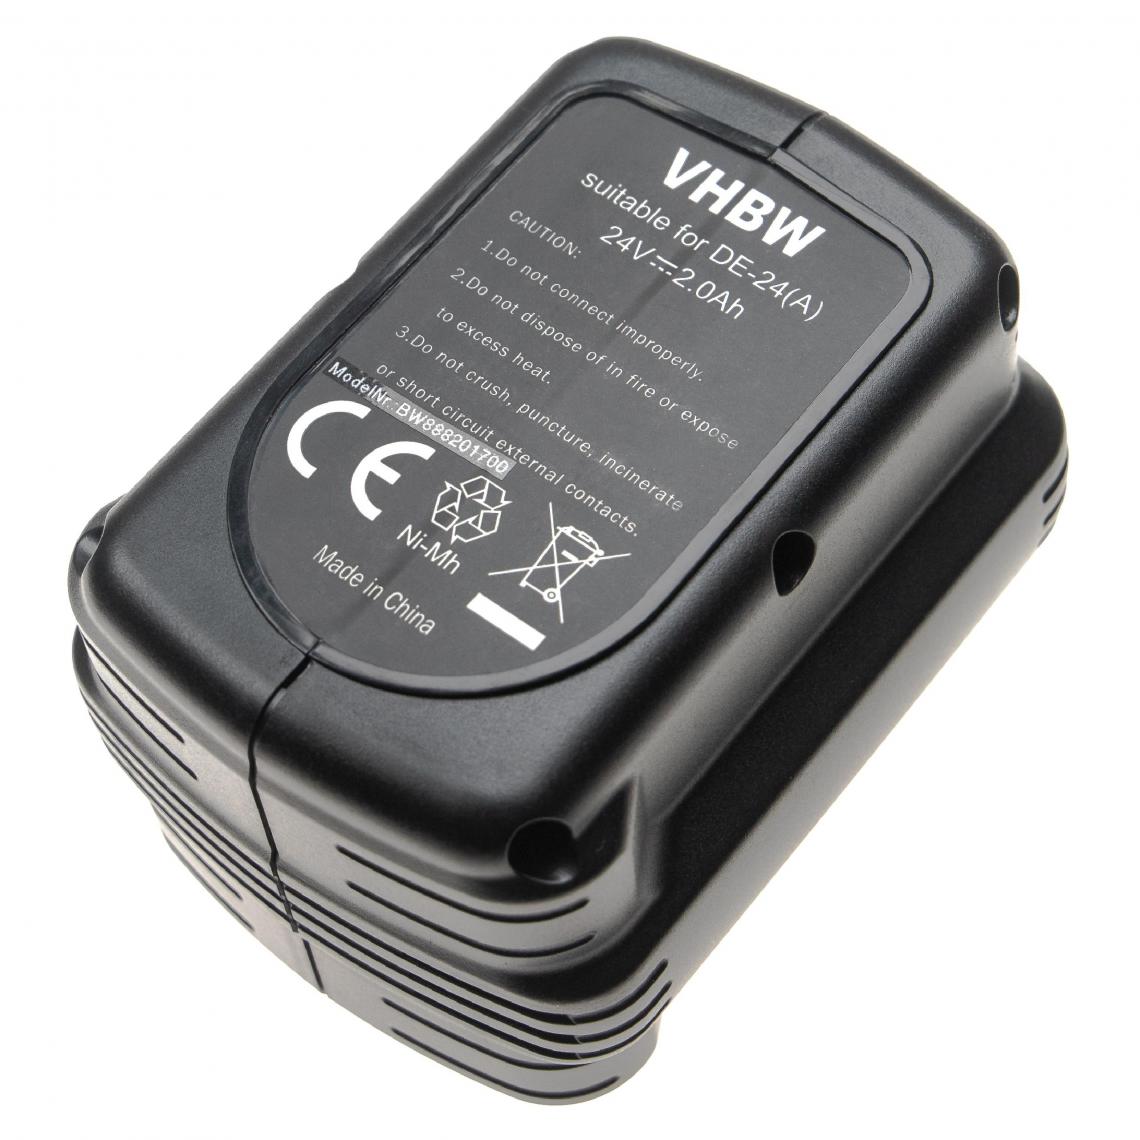 Vhbw - vhbw Batterie compatible avec Dewalt DW004K2H, DW005, DW005K-2, DW005K2C, DW005K2H outil électrique (2000mAh NiMH 24V) - Clouterie